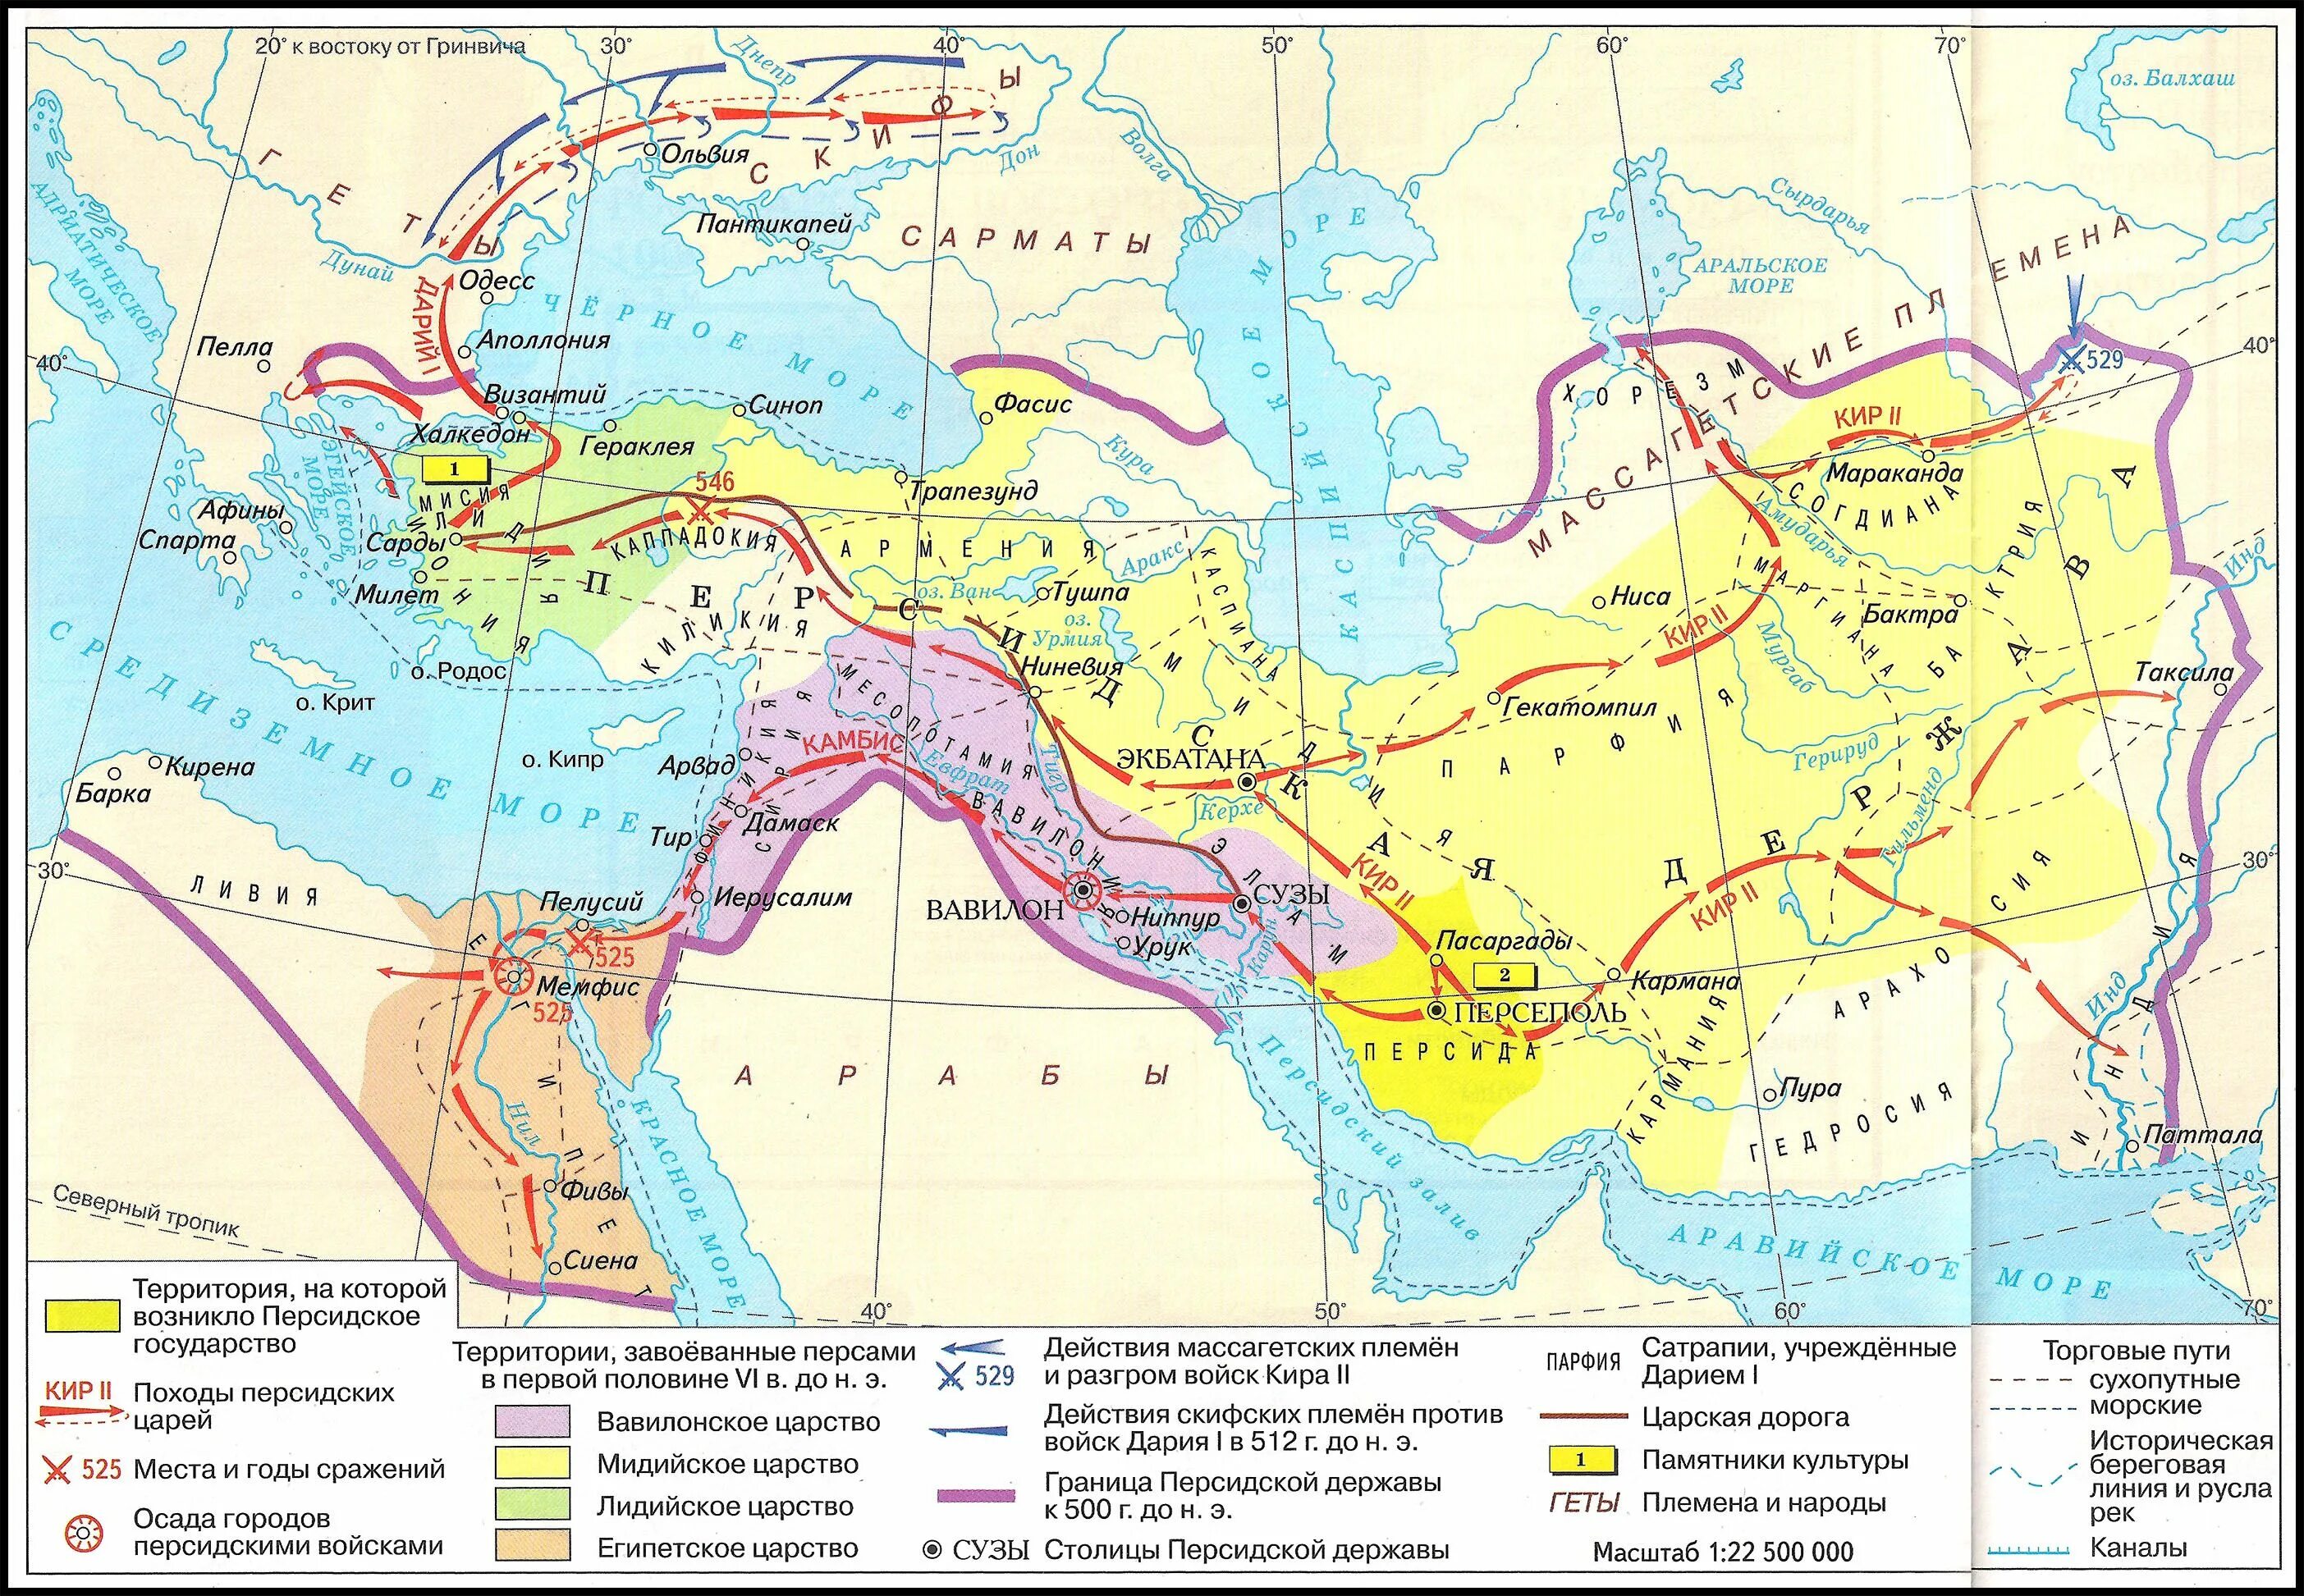 Персидская держава 550-330 гг до н э.